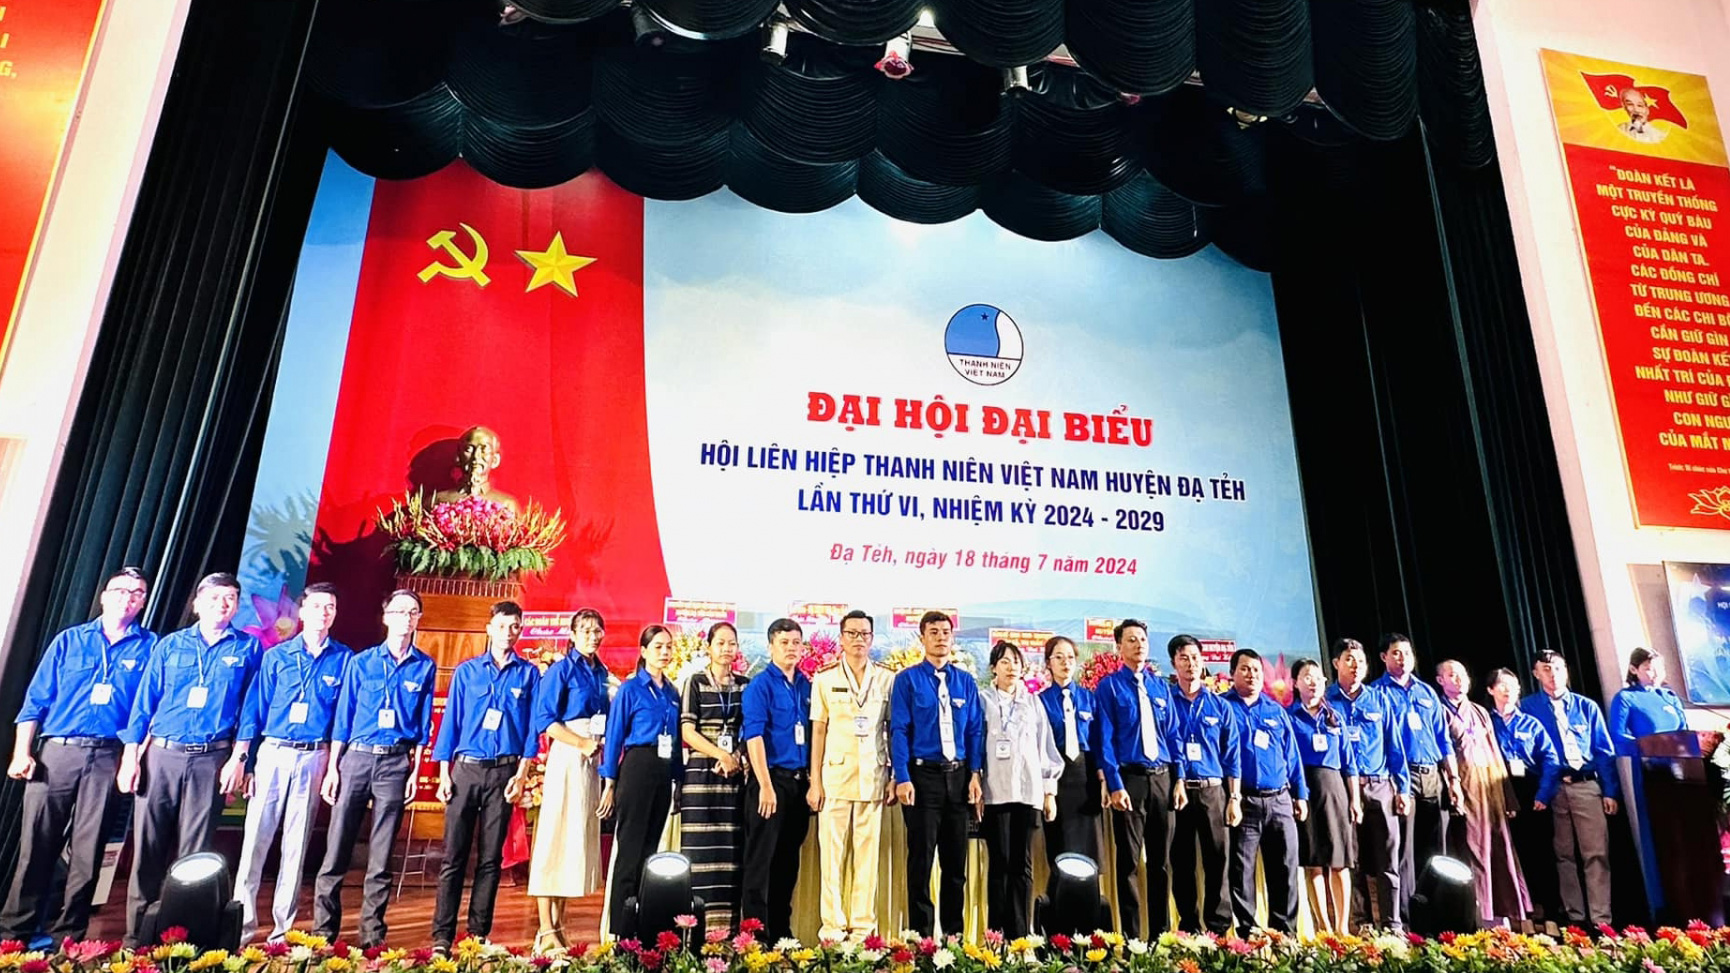 Đại hội Hội LHTN Việt Nam huyện Đạ Tẻh lần thứ VI thành công tốt đẹp